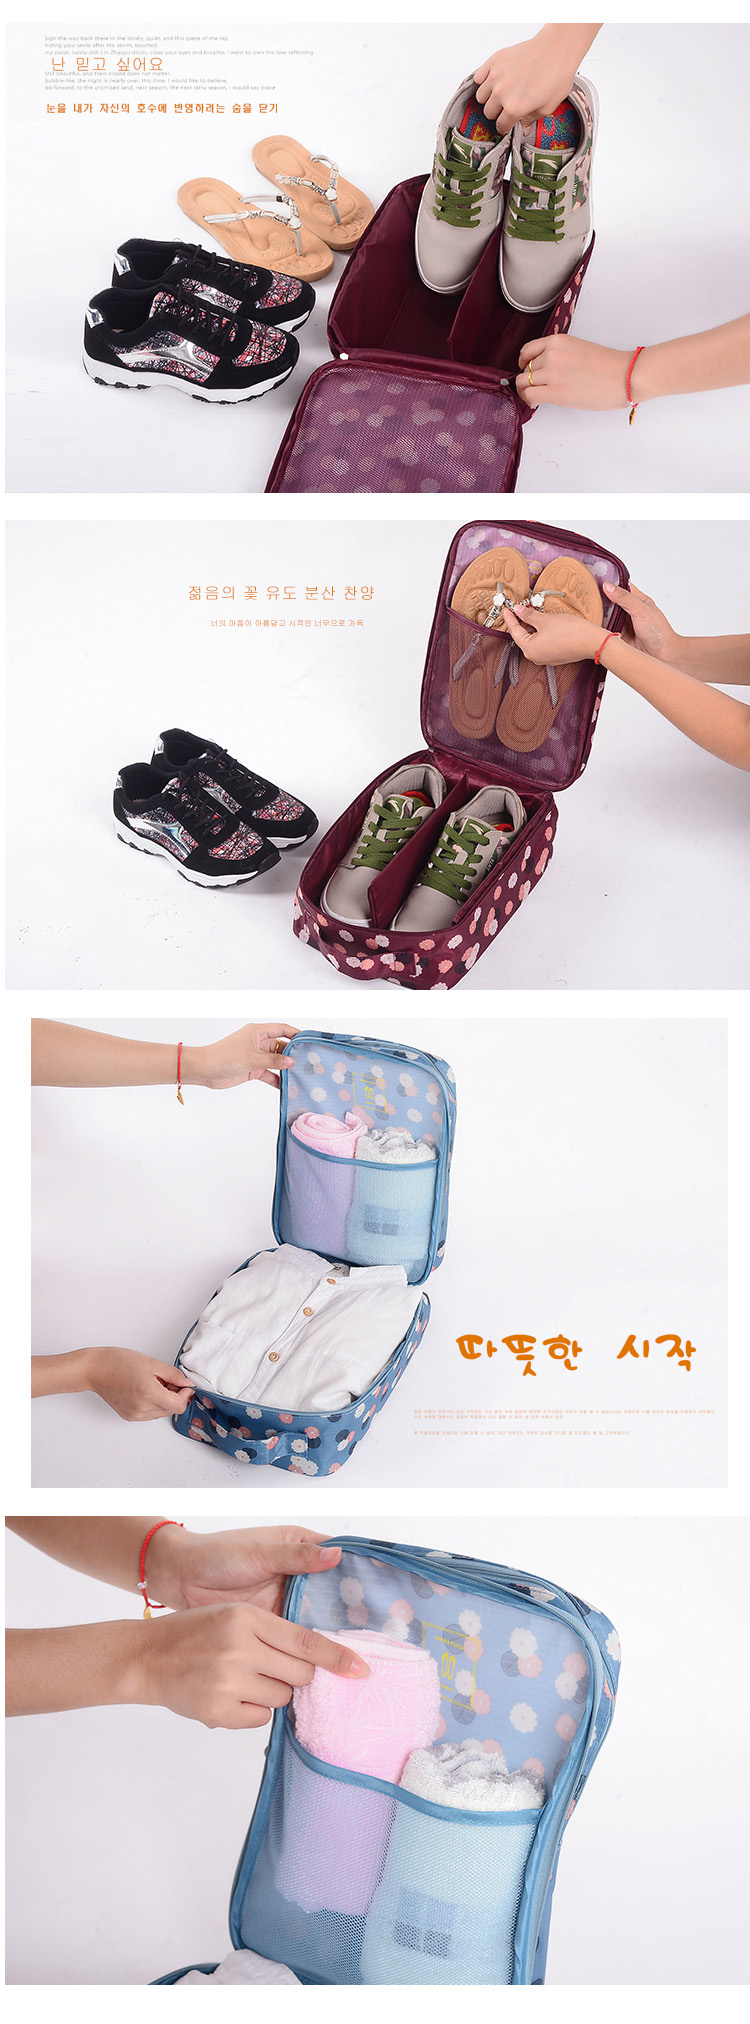 最新款旅行收纳包实用便携收纳鞋盒鞋包 鞋子收纳袋防尘收纳袋4